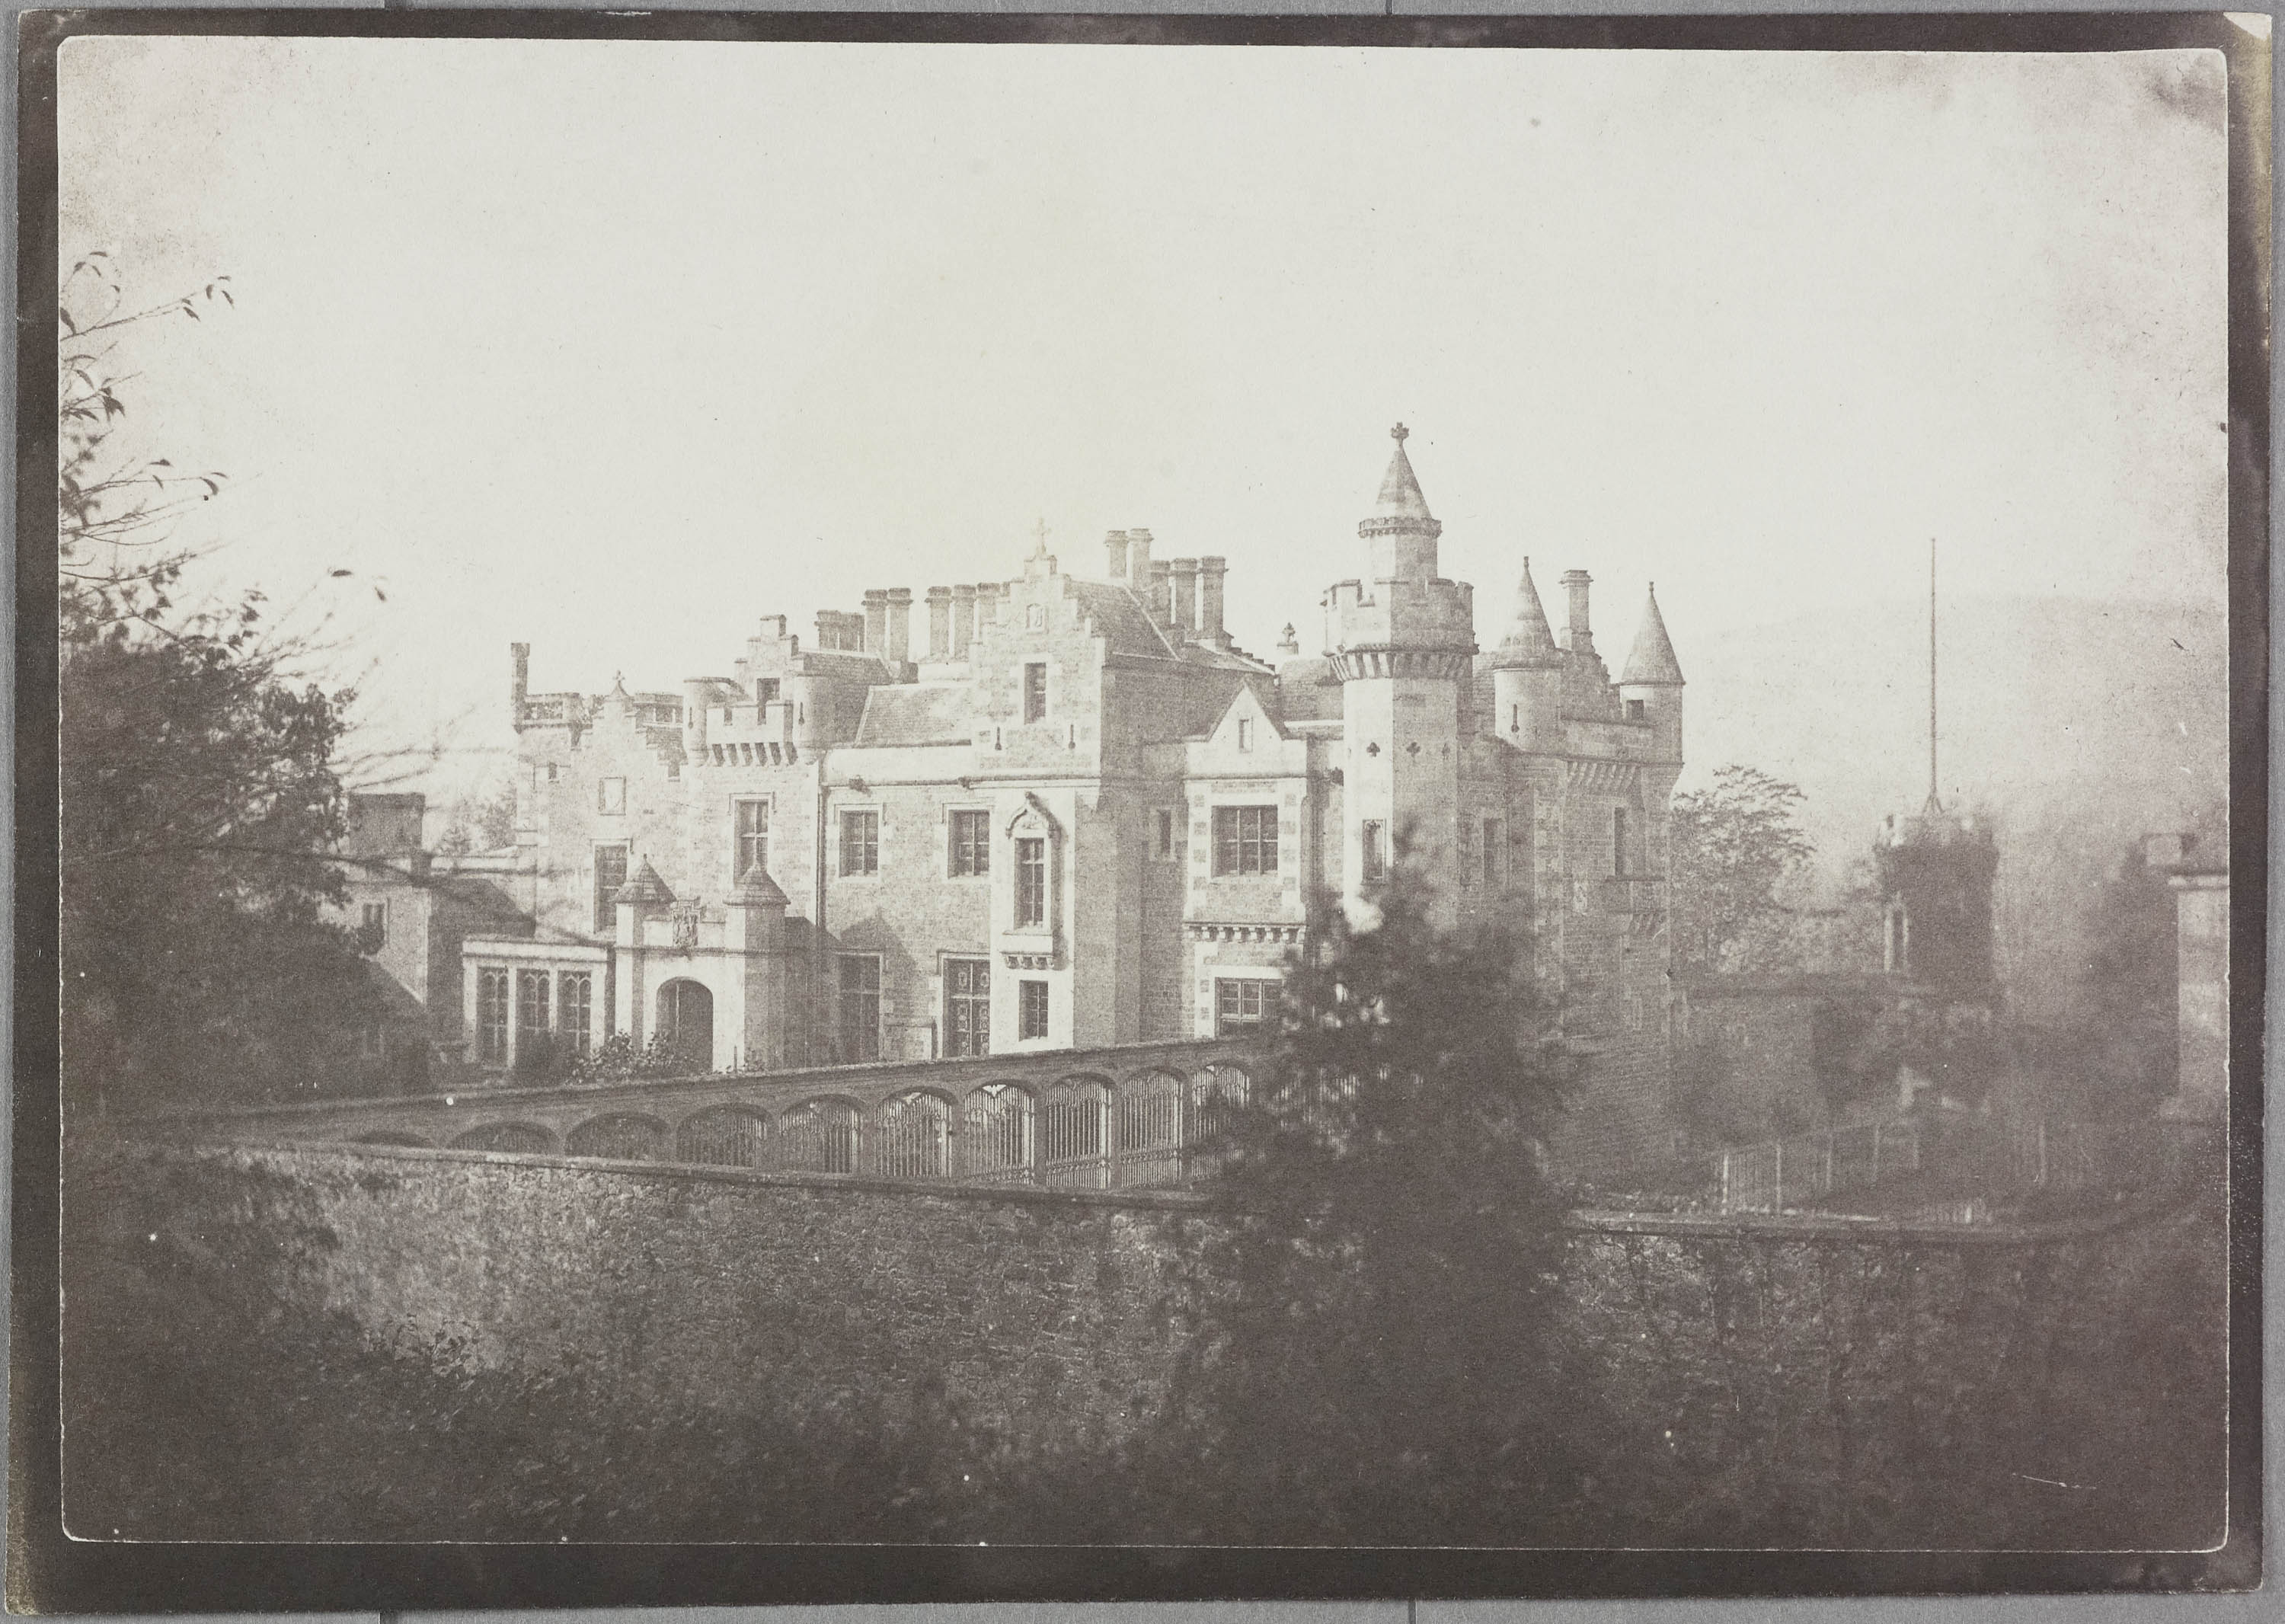 Шотландия, замки, Вальтер Скотт: гид по выставке создателя фотографии Уильяма Тальбота (фото 4)